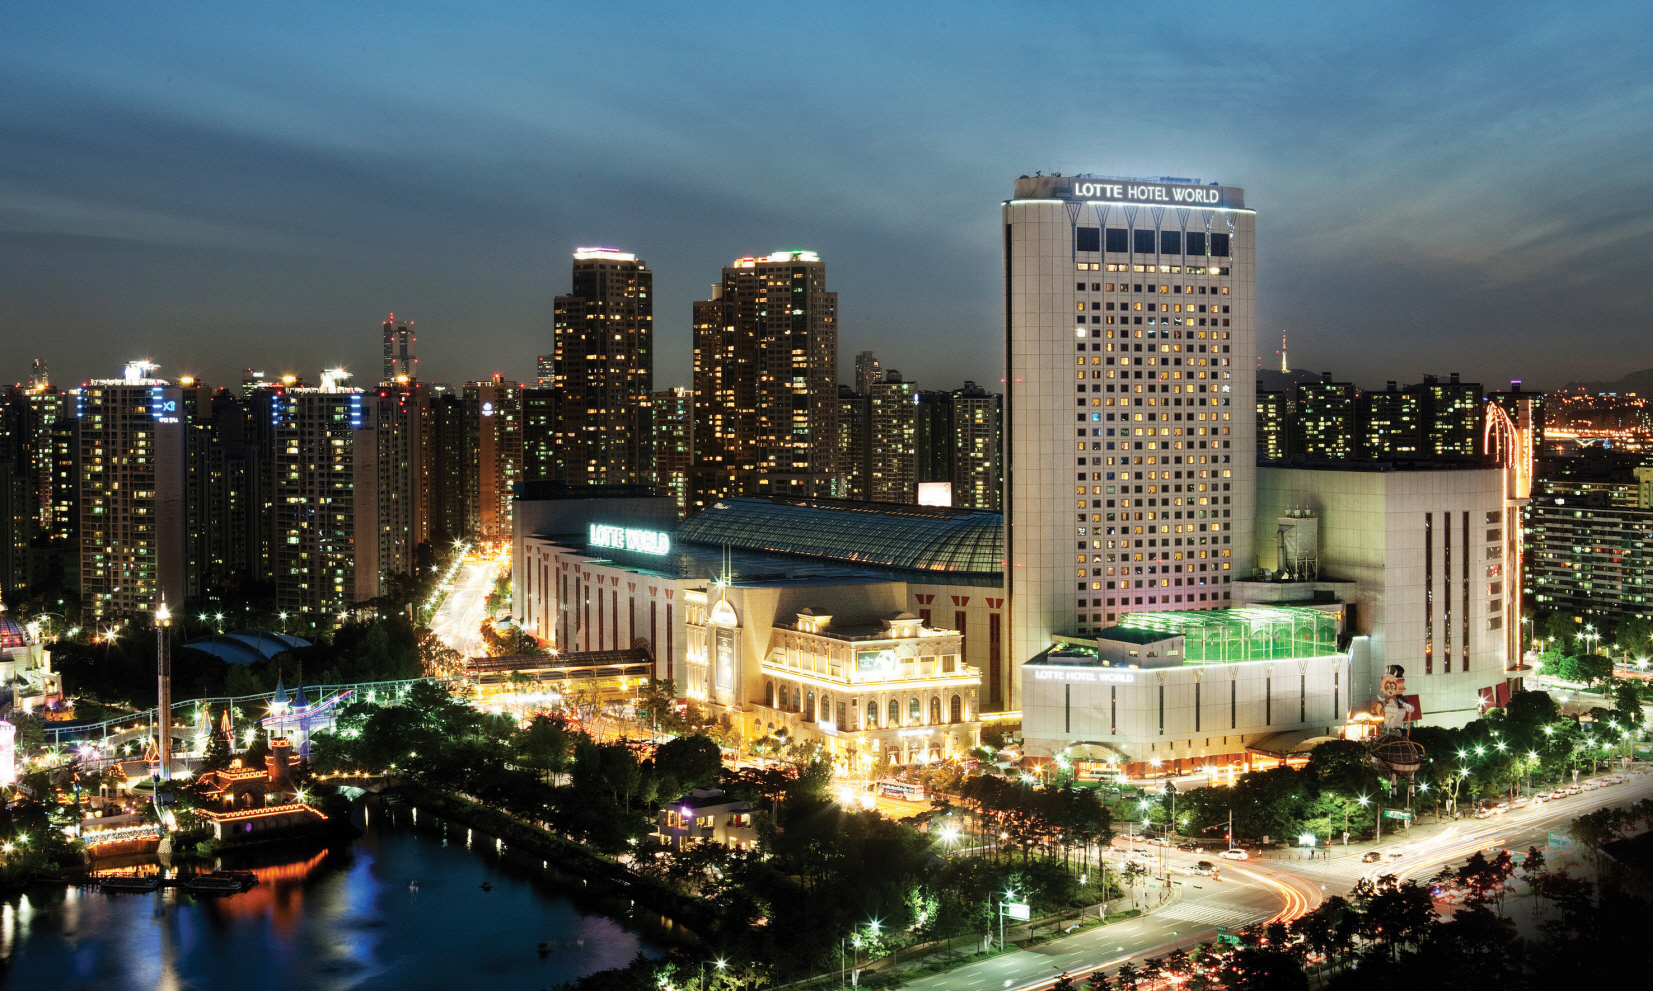 Lotte Hotel Seoul - Homecare24